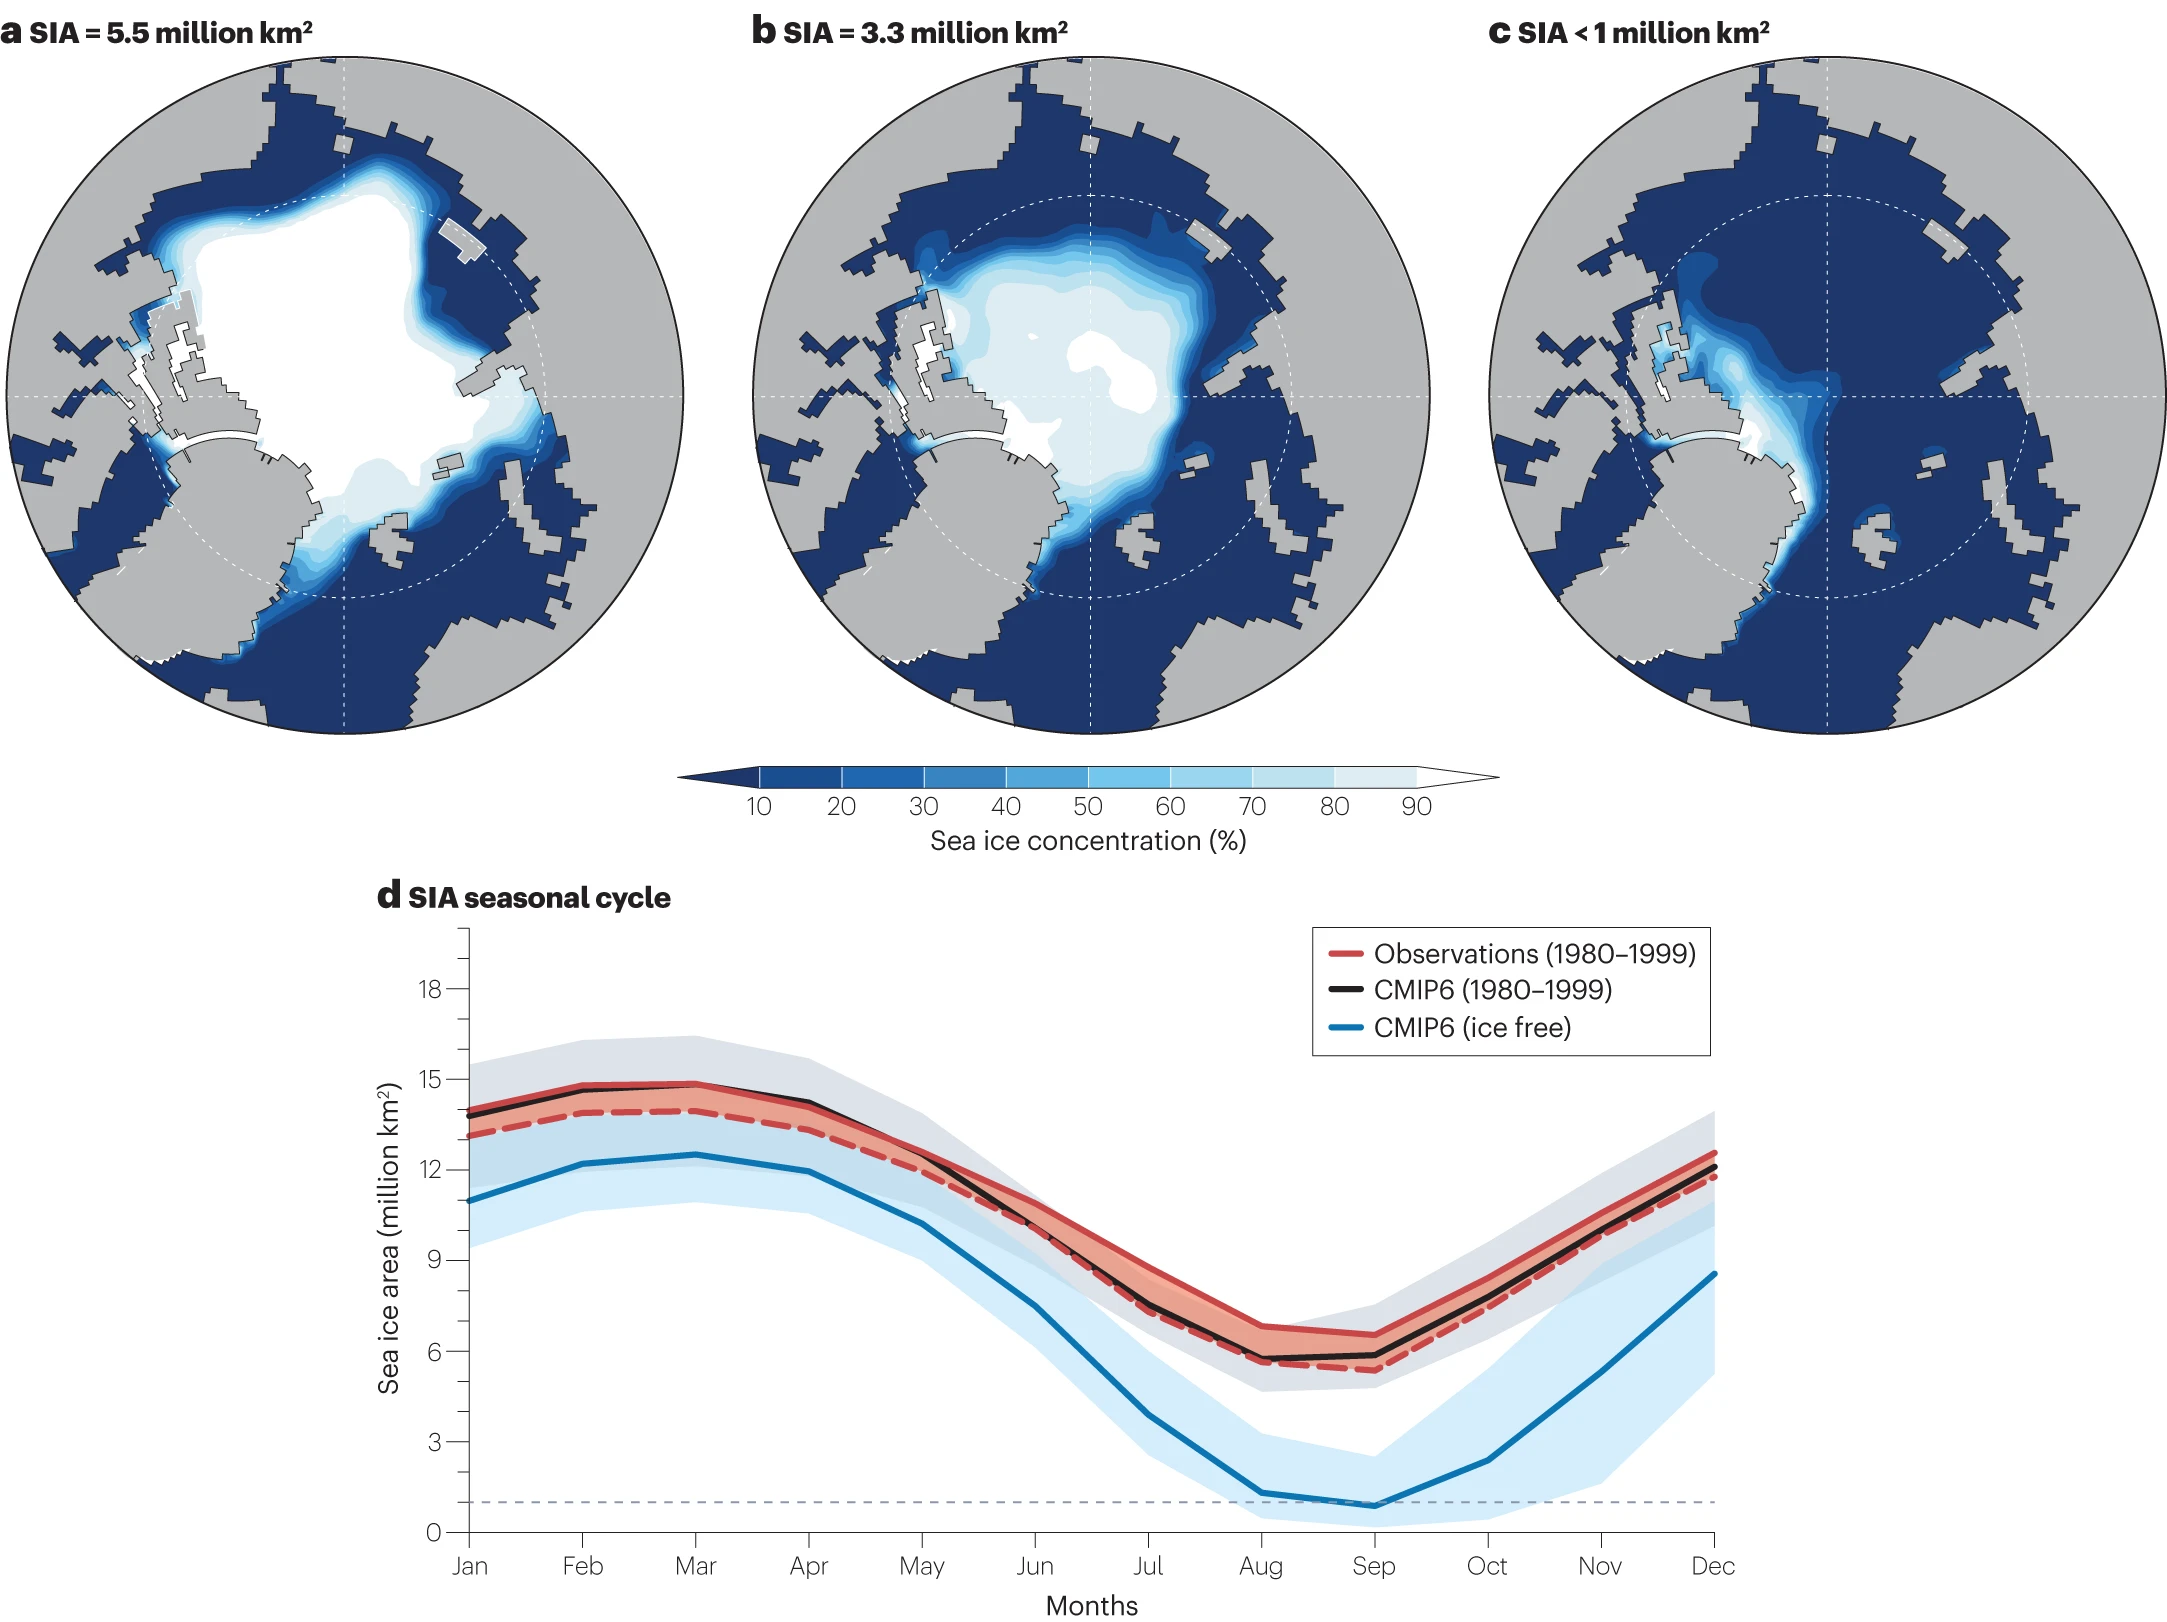 Embora a área do gelo marinho seja reduzida em todos os meses do ano no futuro, prevê-se que a perda seja maior em setembro, mas o gelo marinho de inverno retorna mesmo depois que as condições livres de gelo são alcançadas